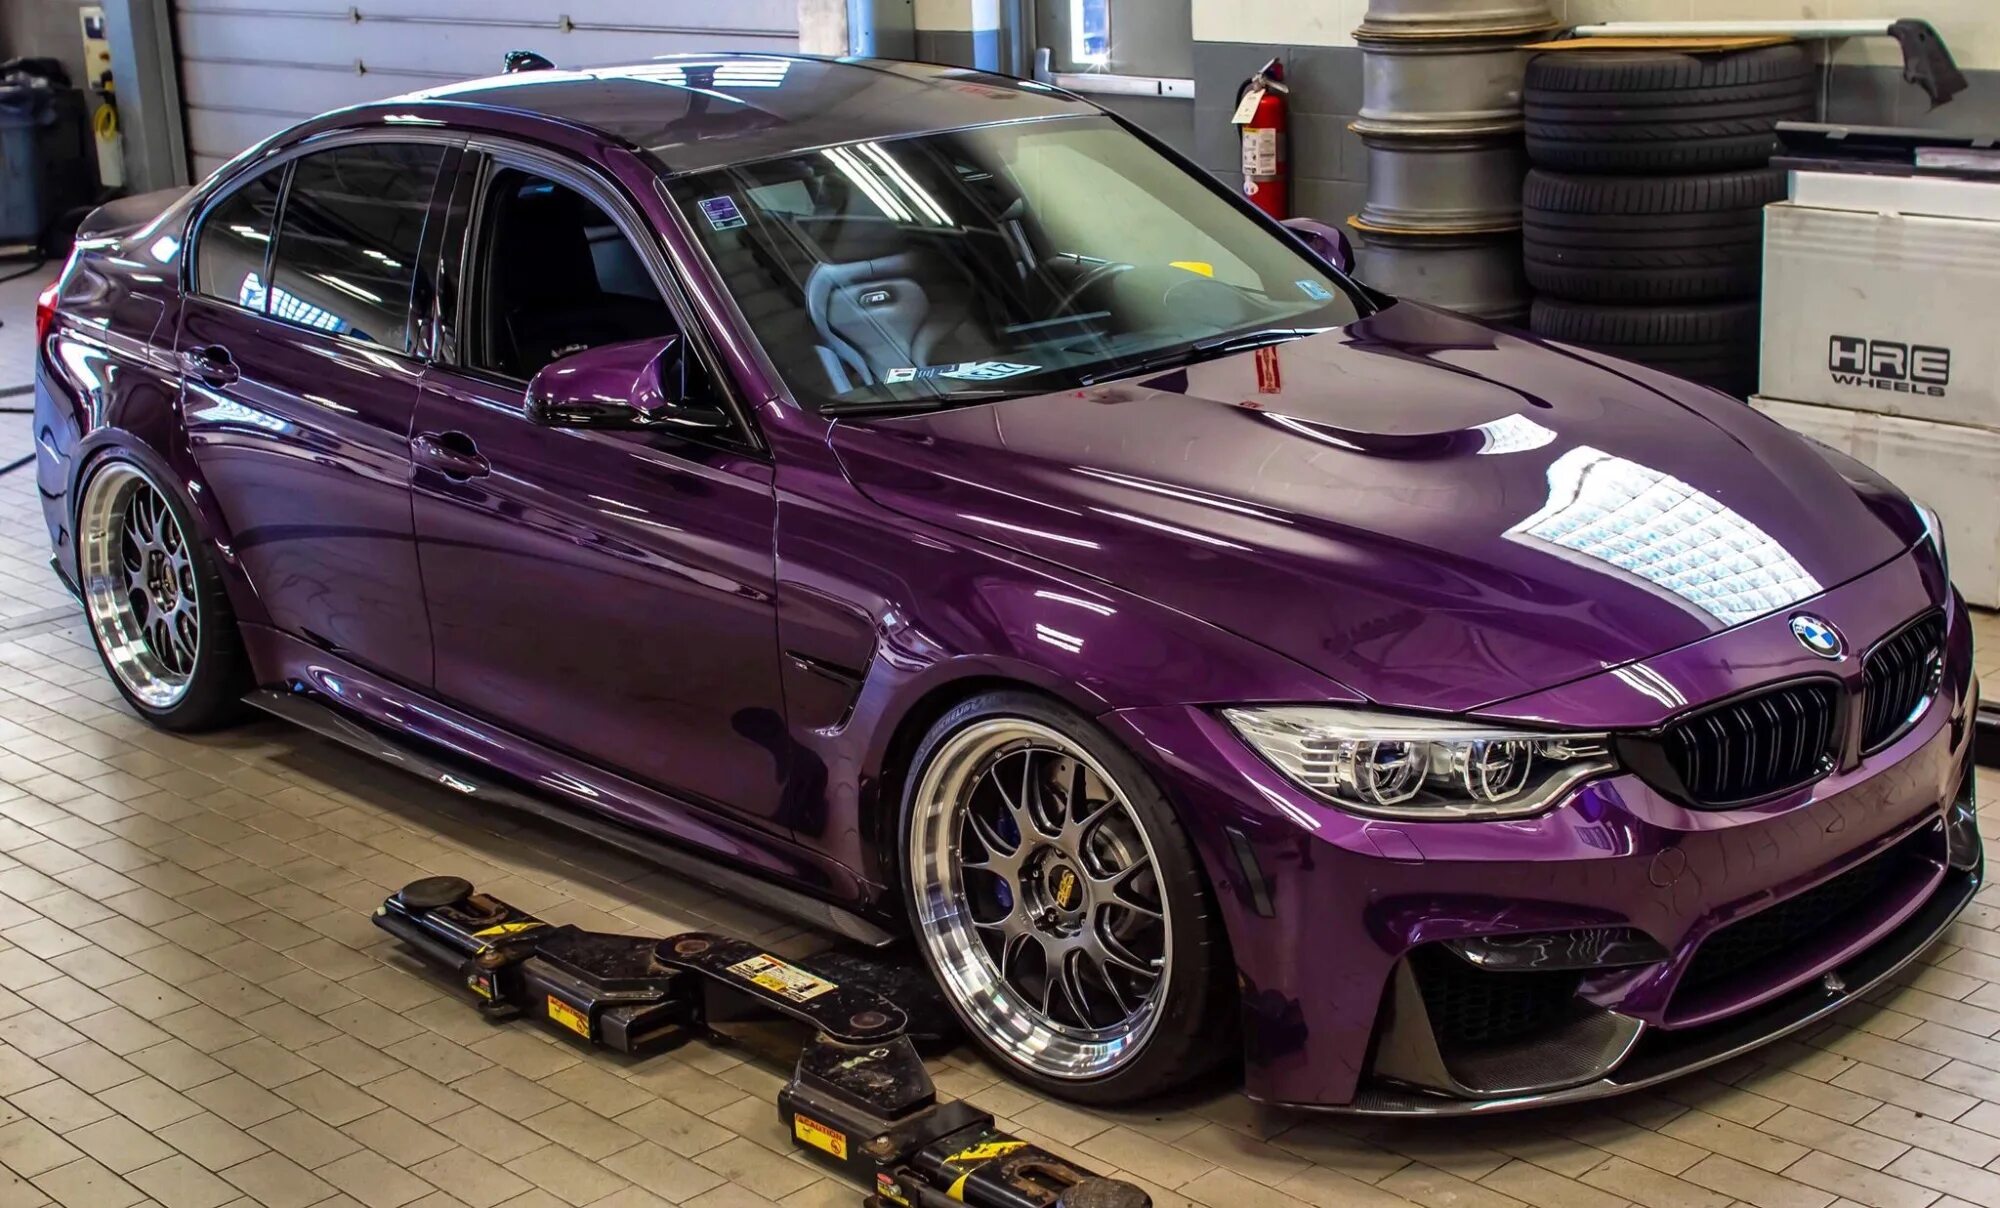 A 3 m 3 24 m 4. BMW m3 f80 Purple. BMW m3 f80 фиолетовая. BMW m3 f80 Рестайлинг. BMW f80 фиолетовый.